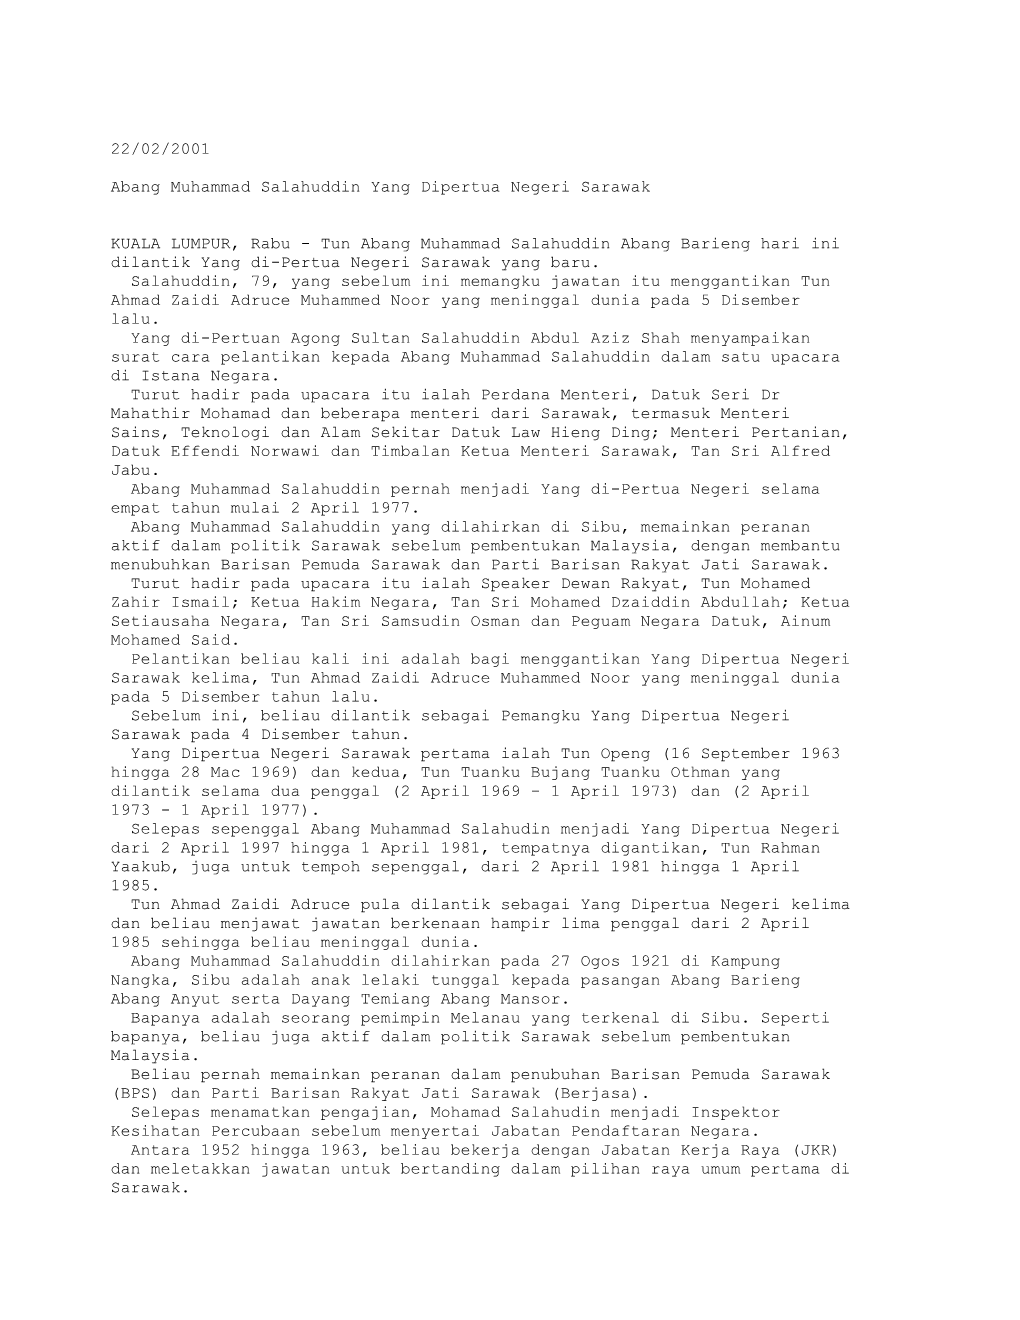 Abang Muhammad Salahuddin Yang Dipertua Negeri Sarawak (BH 22